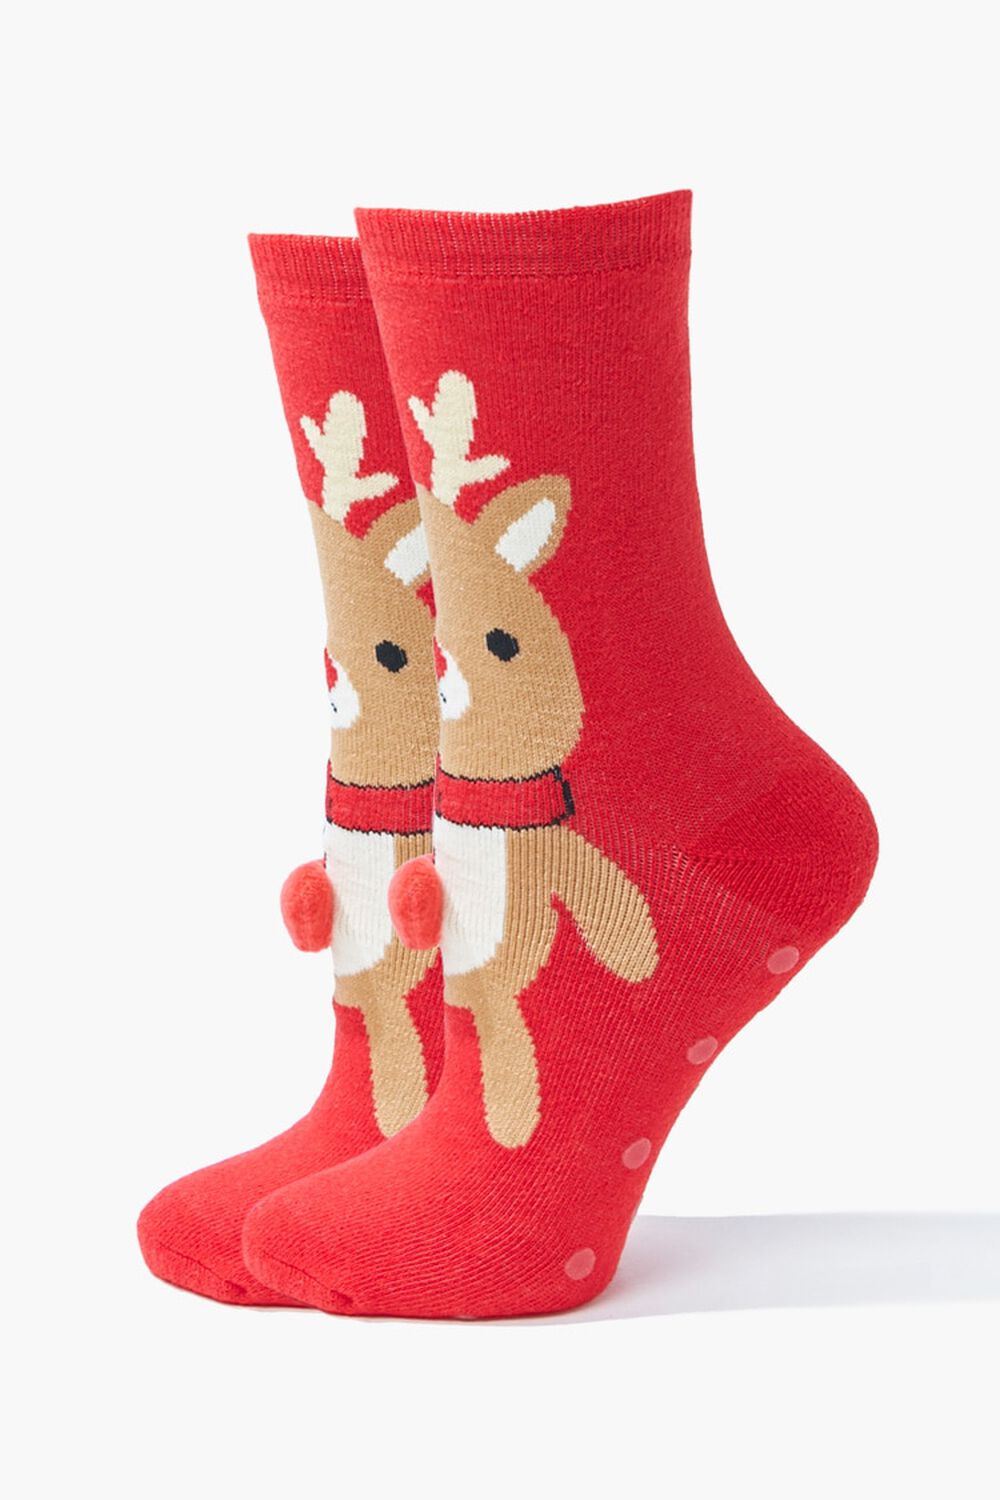 RED/MULTI Reindeer Crew Socks, image 3